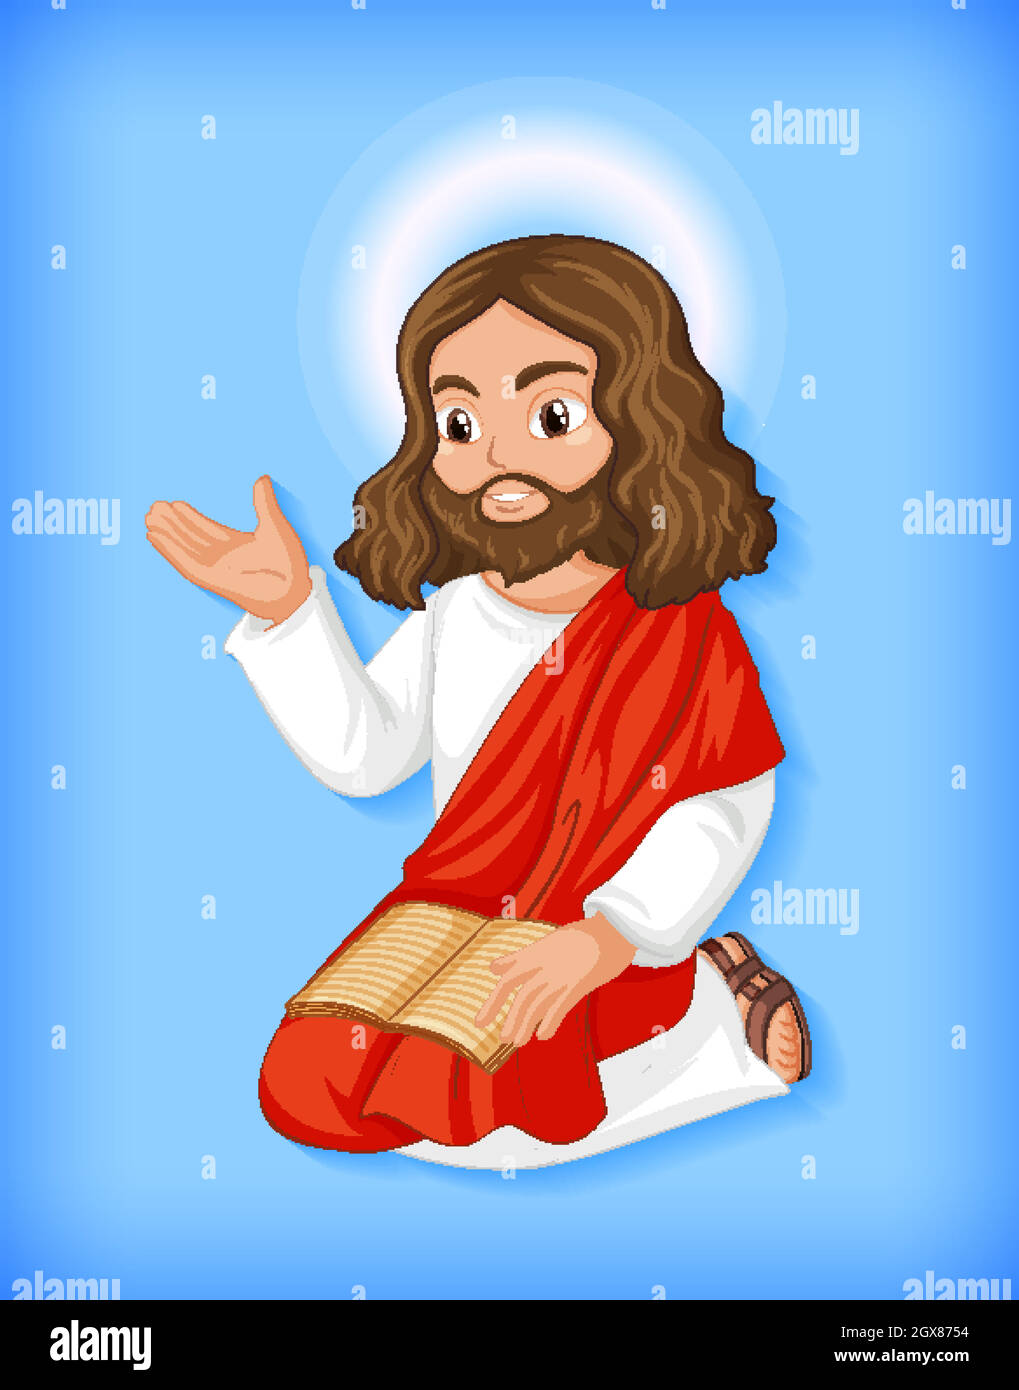 Cartoon image jesus immagini e fotografie stock ad alta risoluzione - Alamy